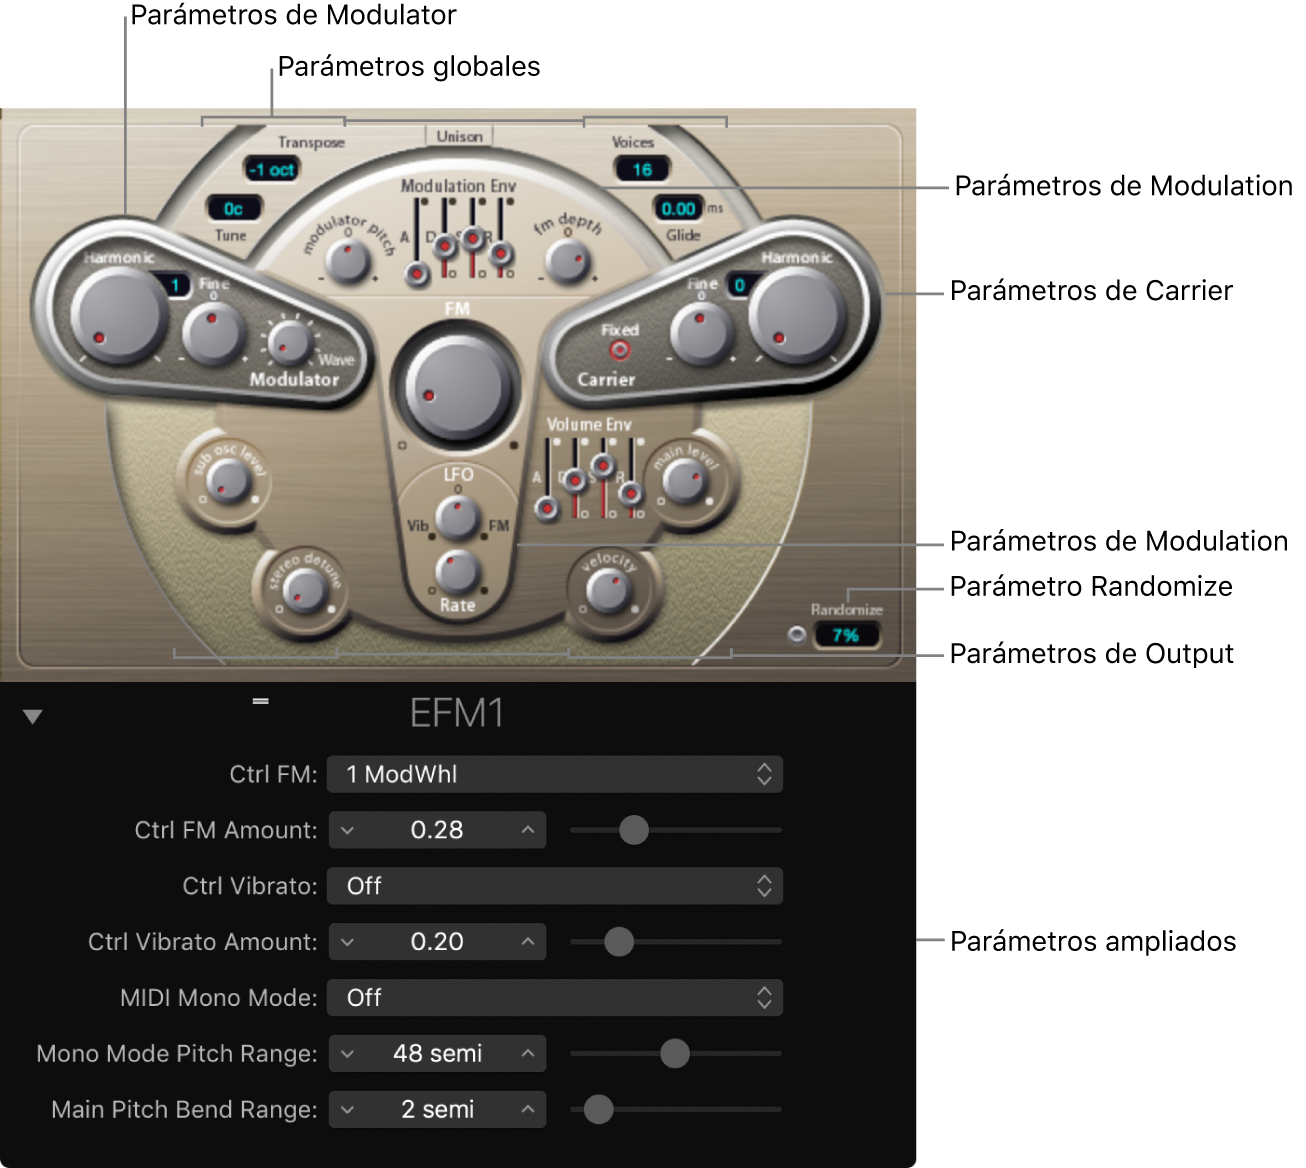 Ilustración. Ventana EFM1, con las principales áreas de la interfaz.